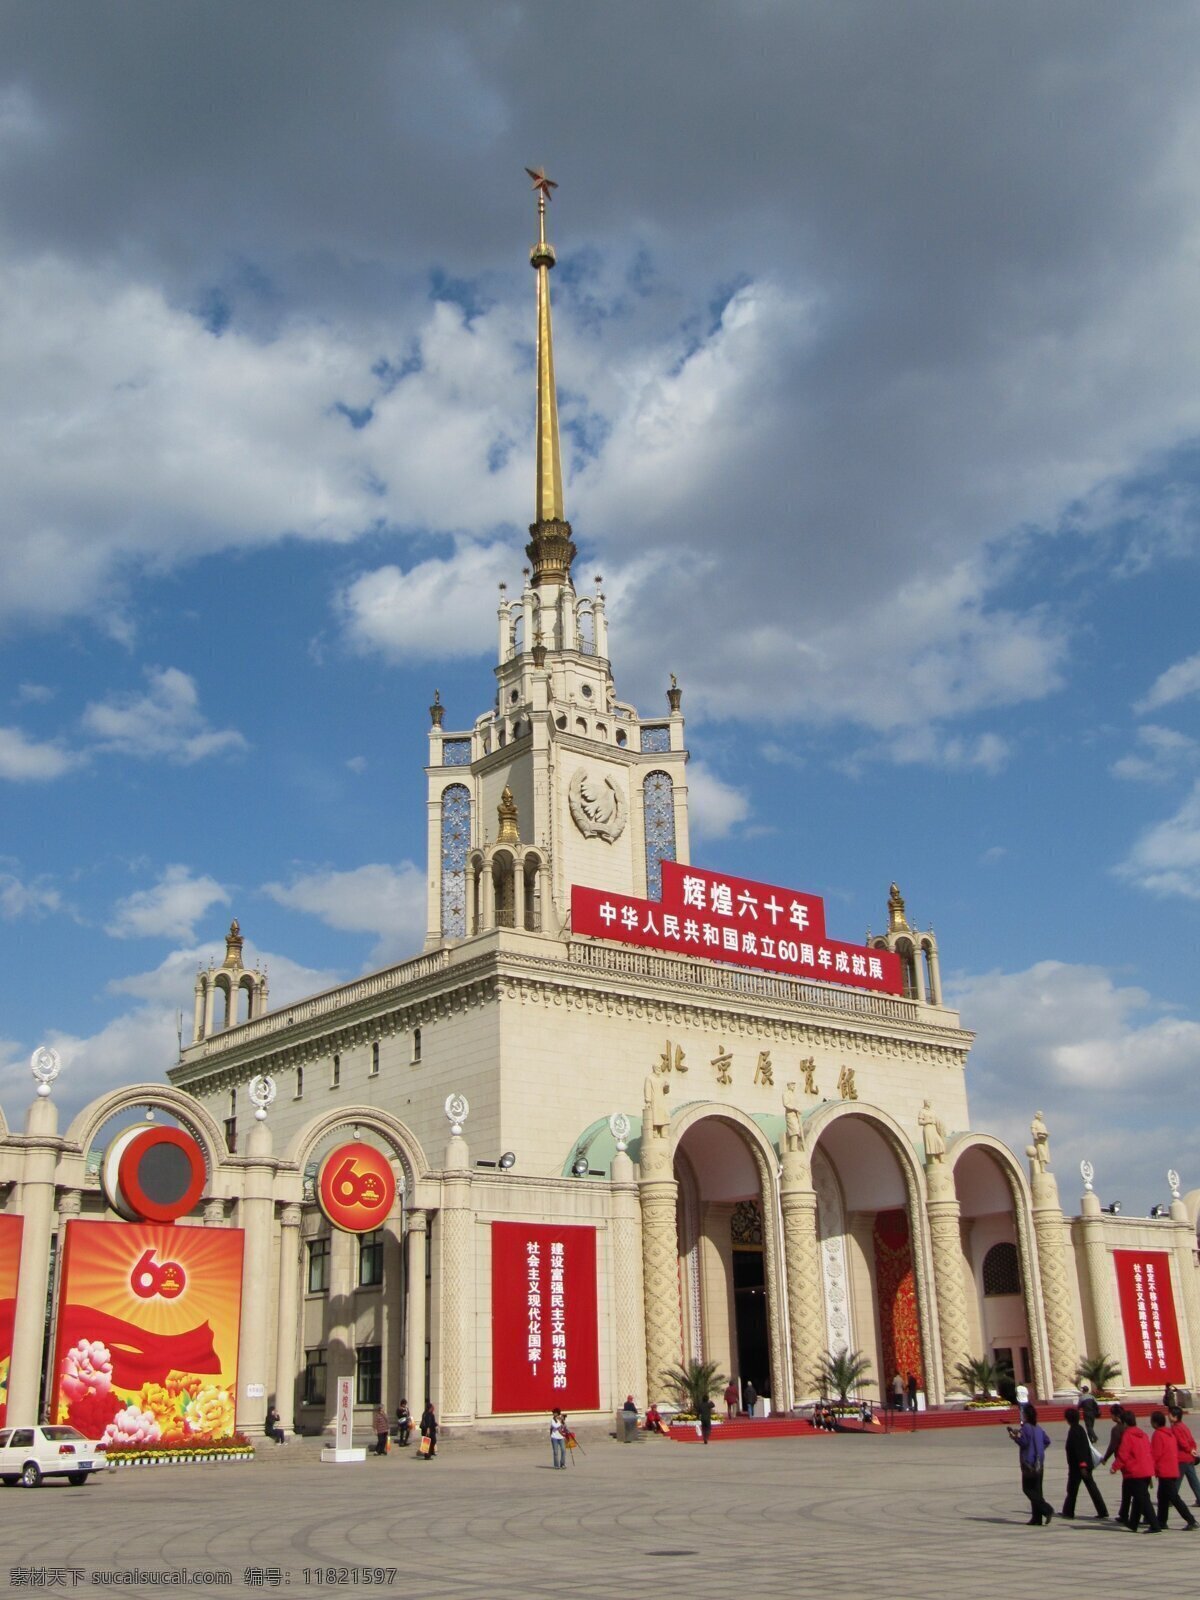 北京展览馆 北京 建筑 建筑摄影 建筑园林 雄伟 展览馆 前苏联 高大 装饰素材 展示设计